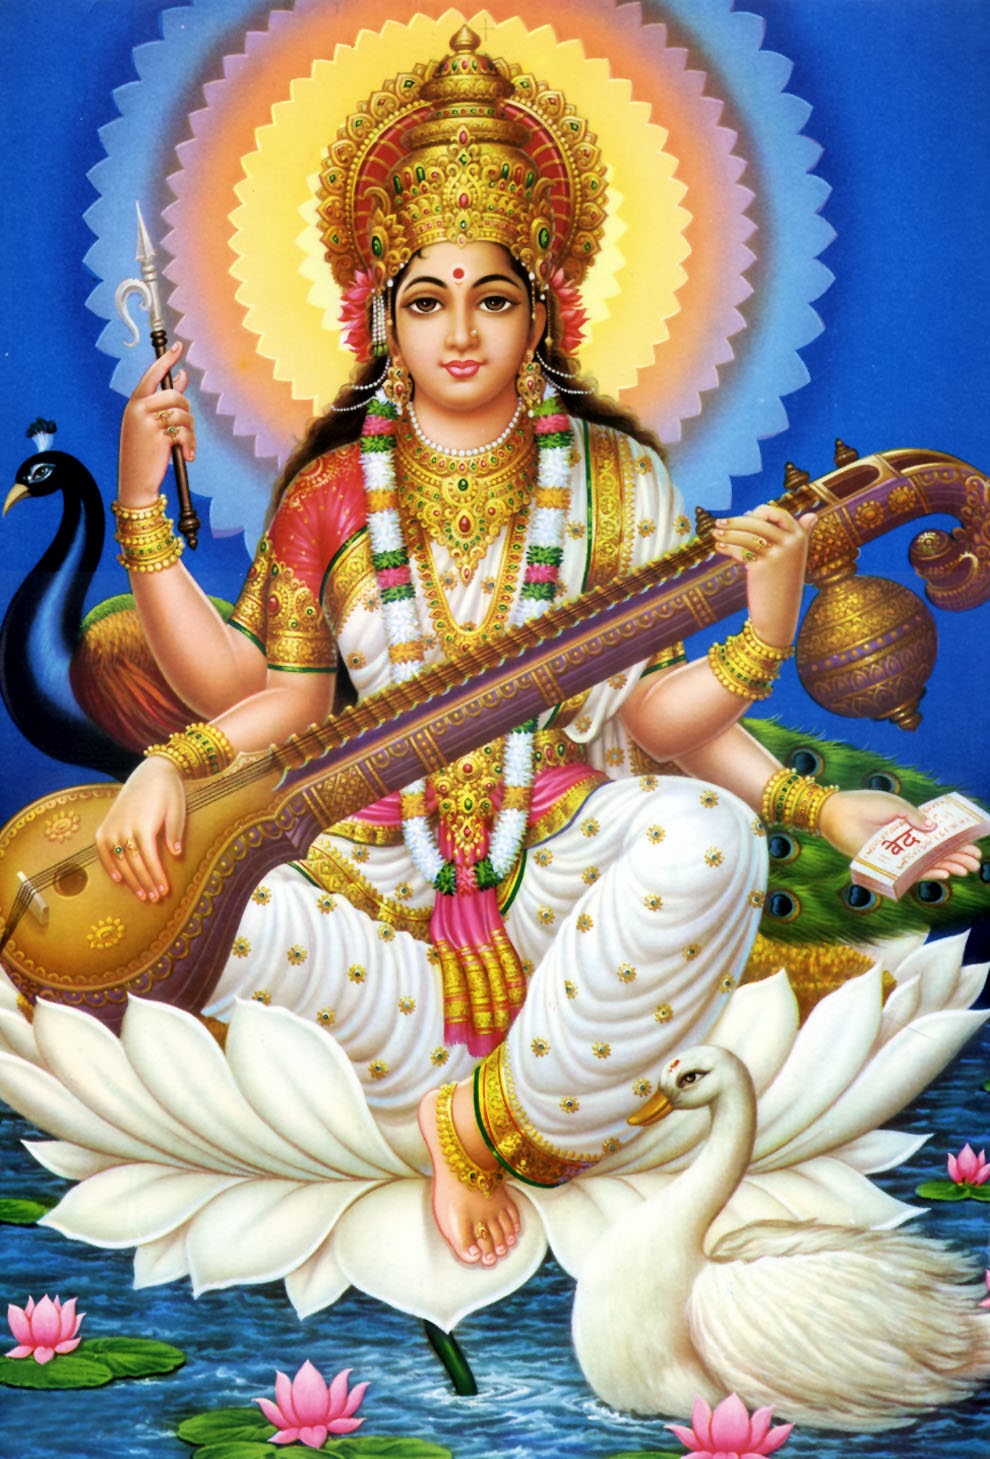 saraswati wallpaper,instrumentos de cuerda pulsada,instrumento musical,personaje de ficción,gurú,mitología